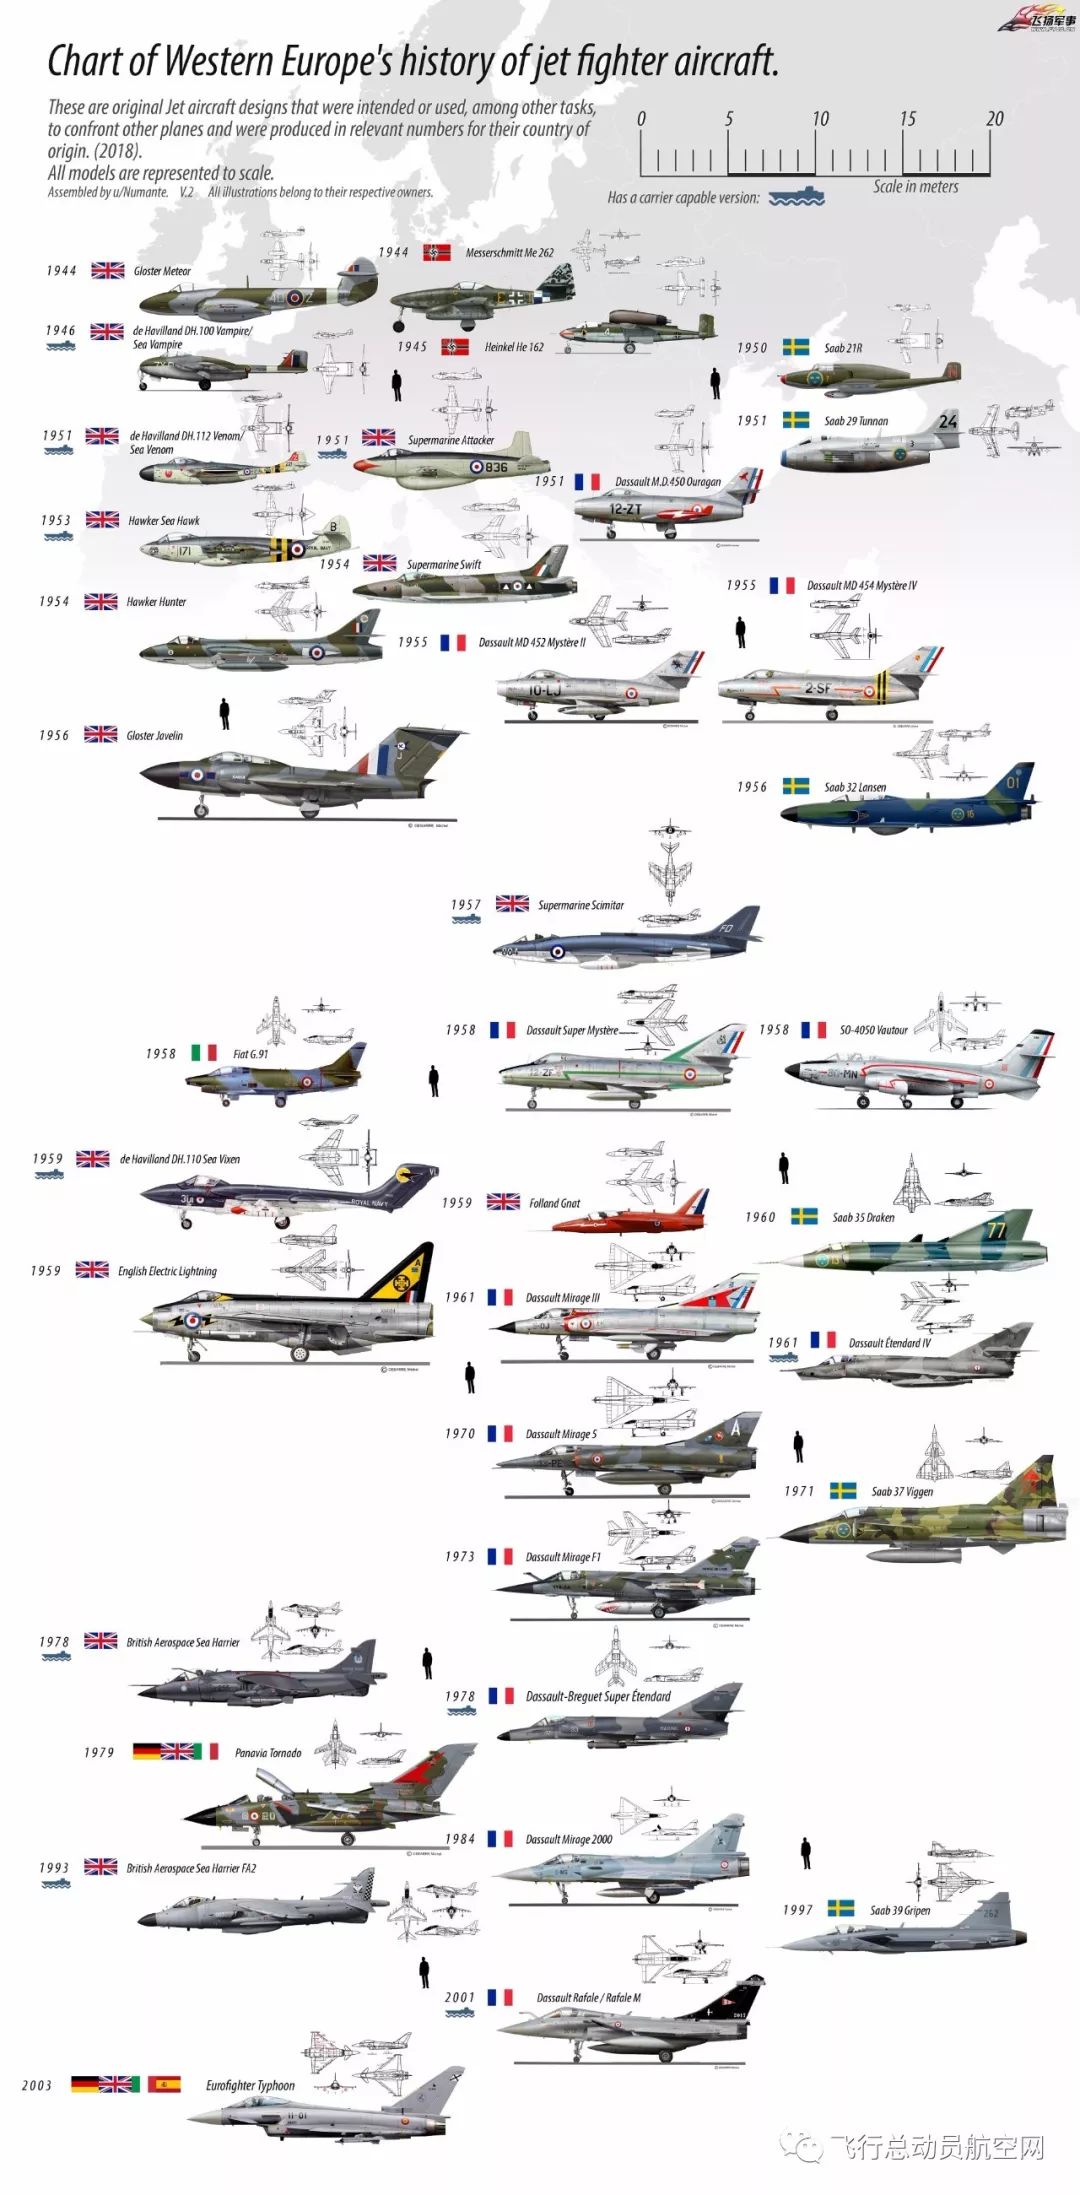 一张图看完西欧喷气战斗机发展历程!